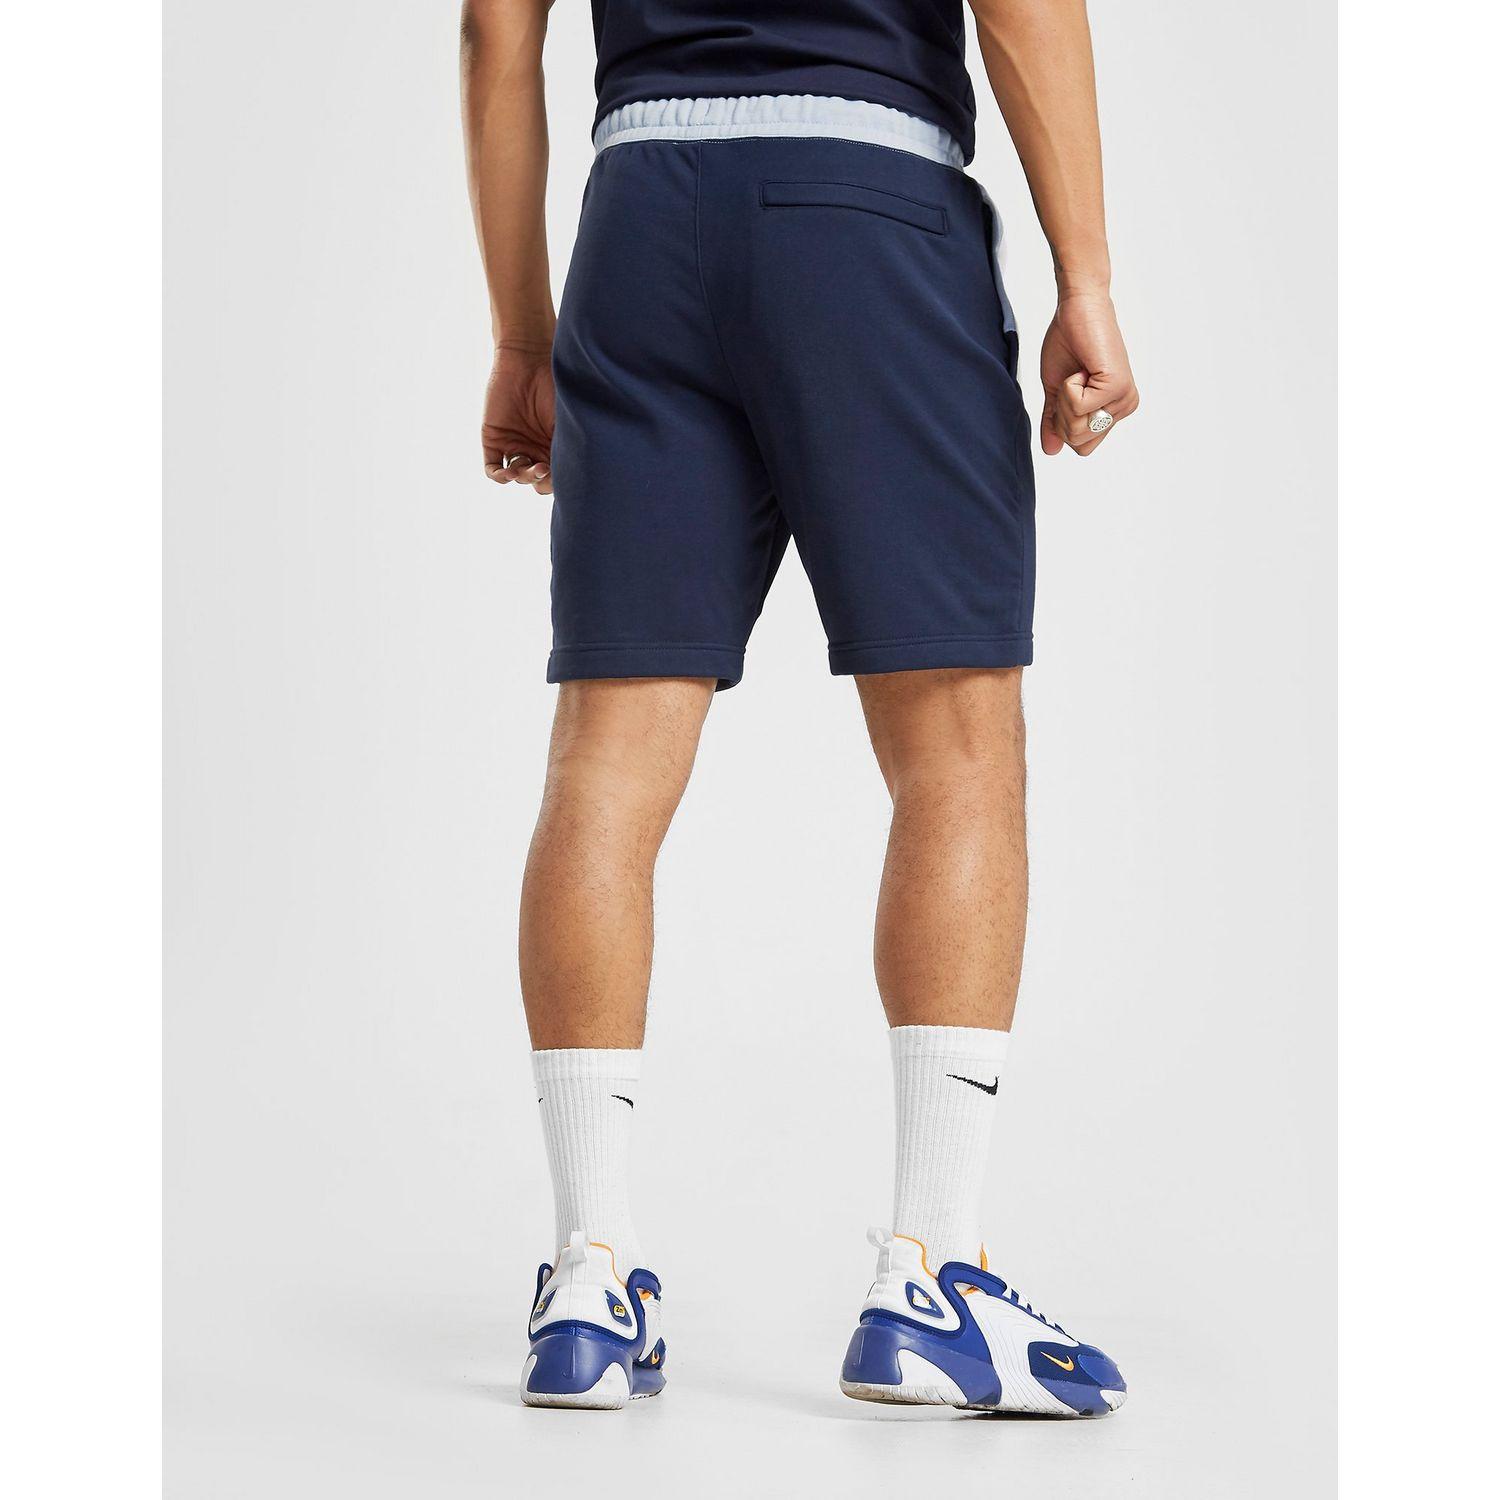 Nike Swoosh Fleece Shorts in Navy/Light/Blue/White (Blue) for Men - Lyst